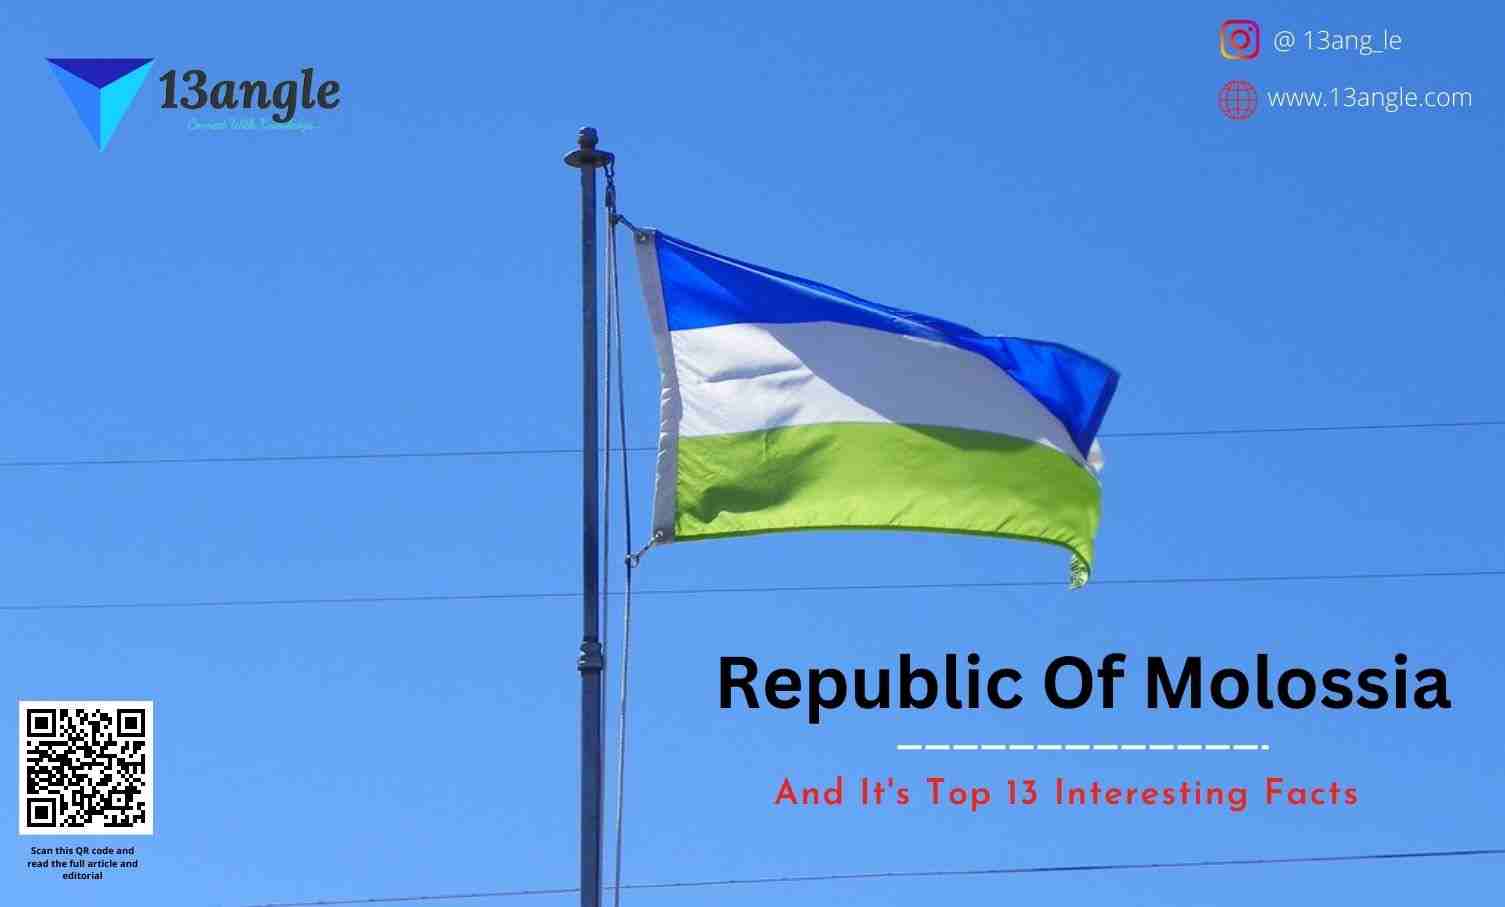 Republic Of Molossia- 13angle.com